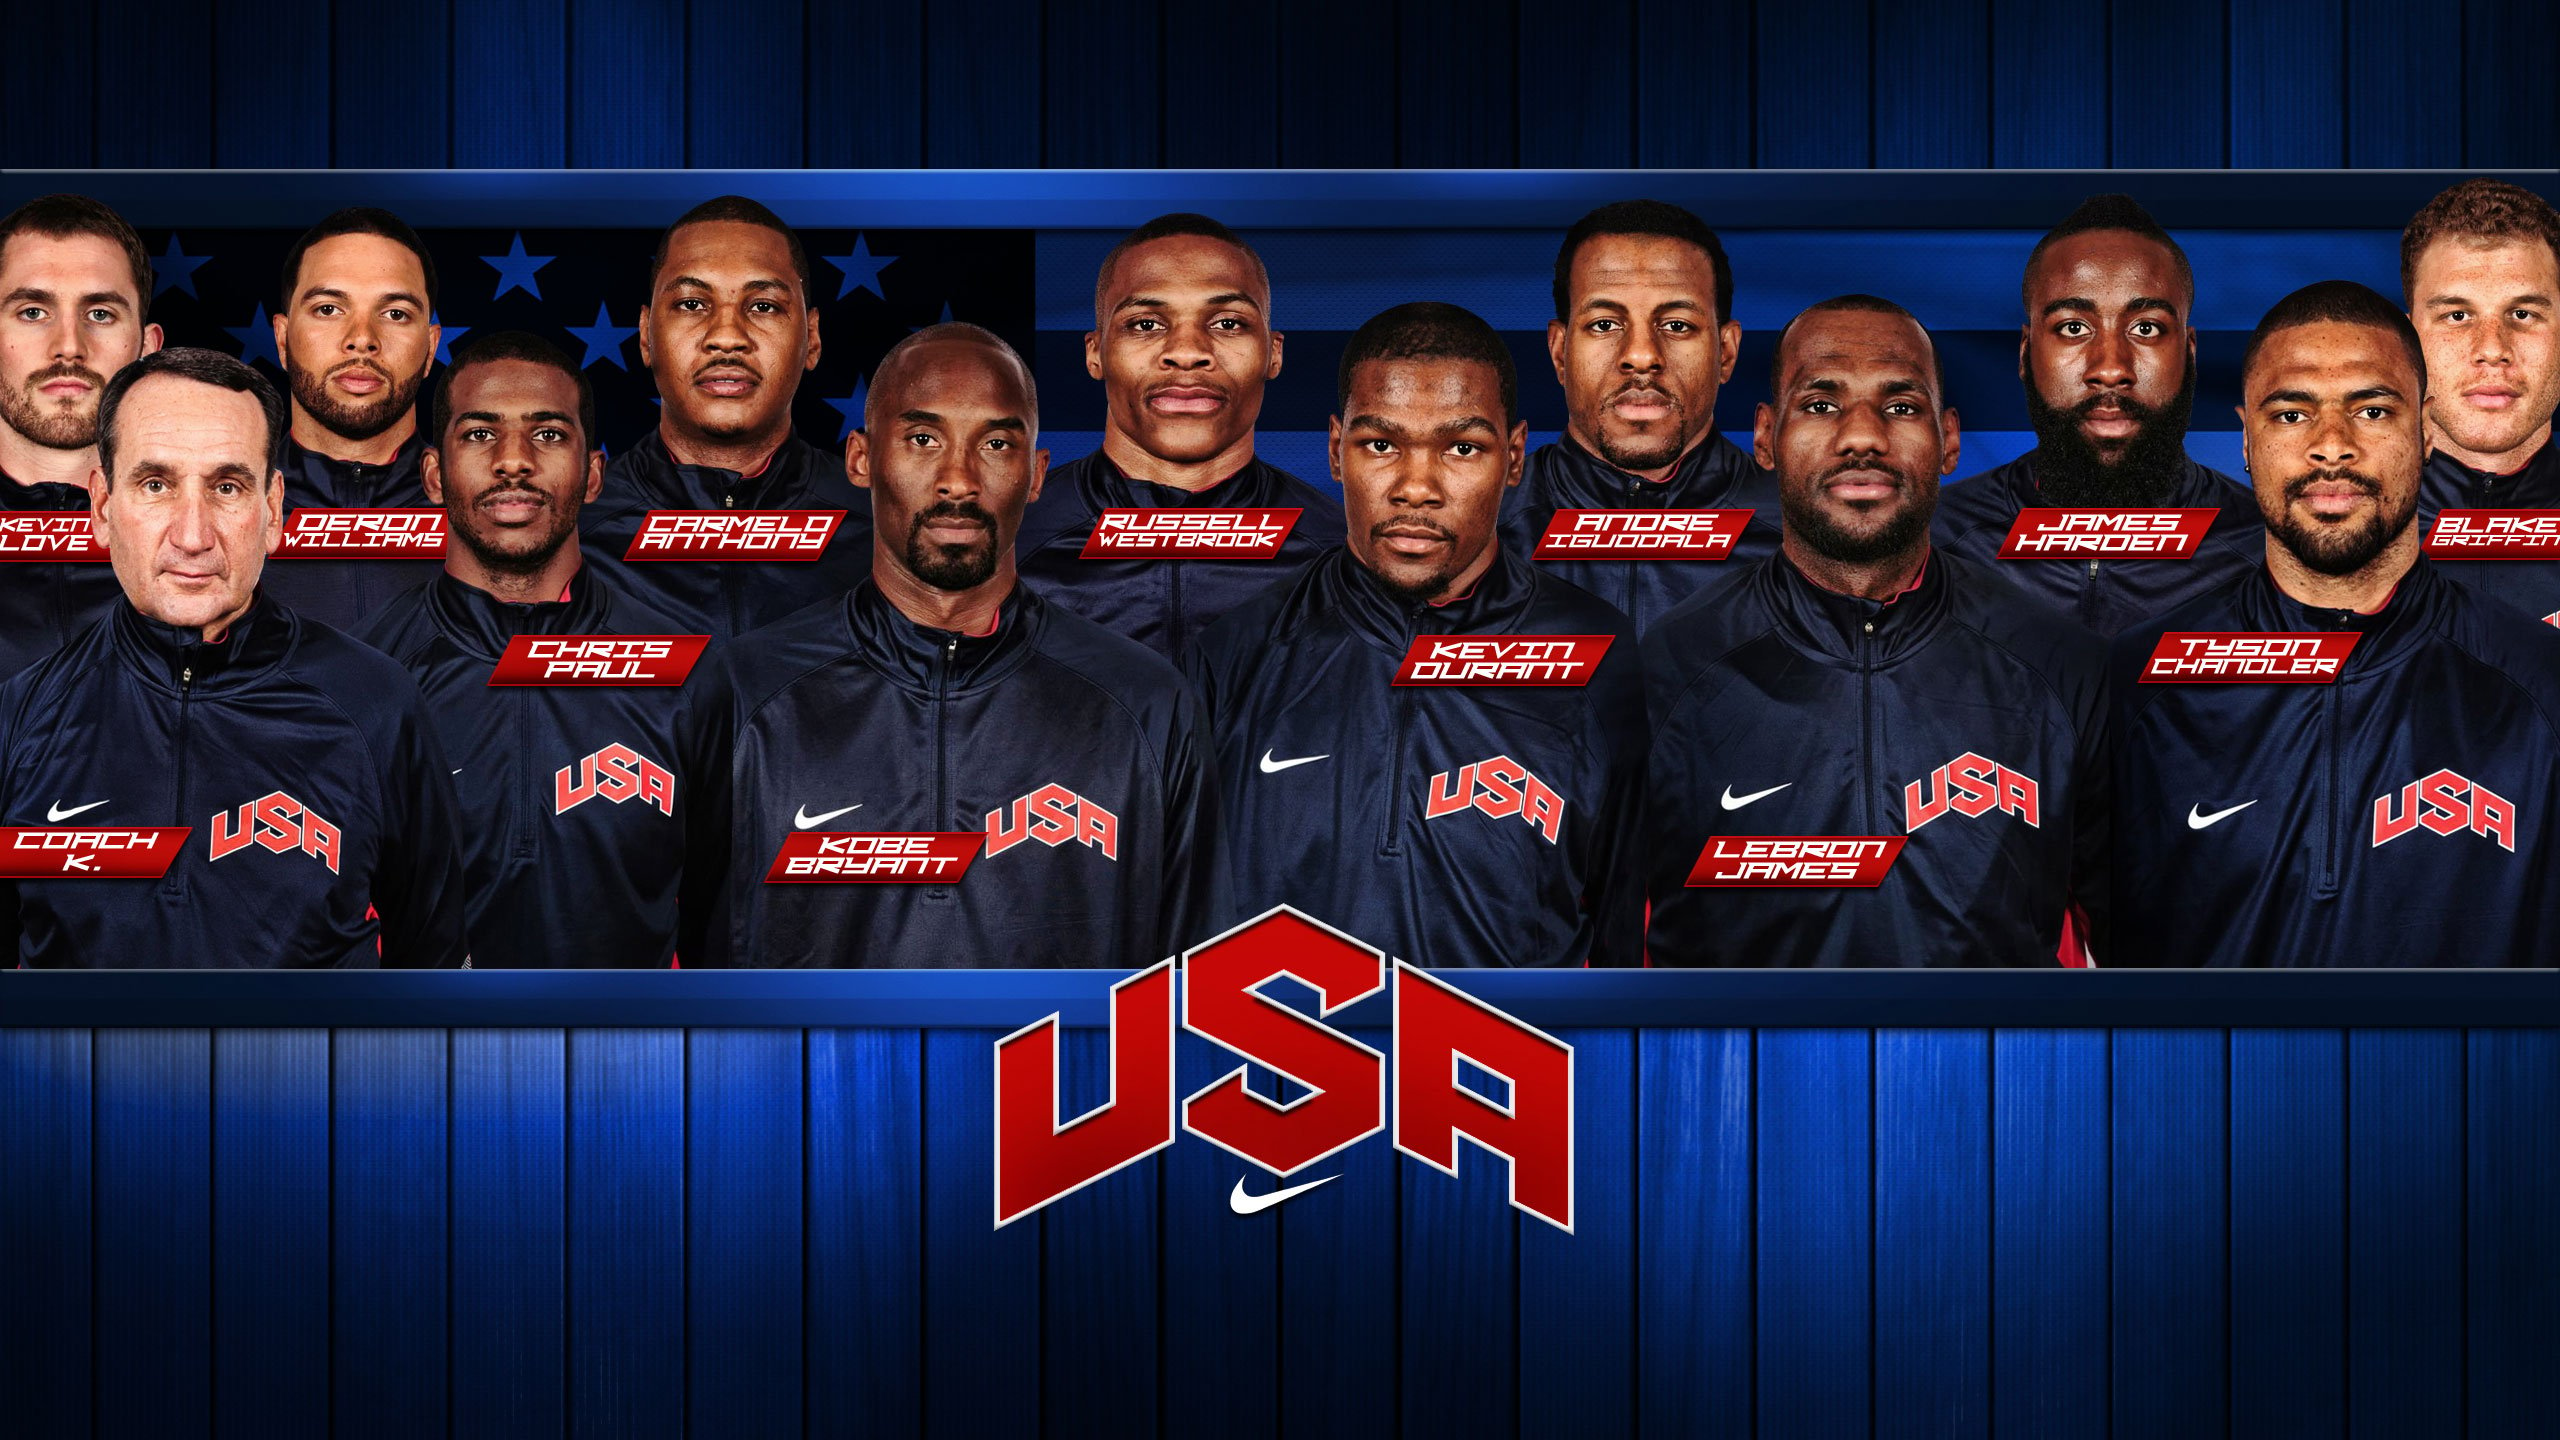 nba usa 2012 nba team wallpaper share this cool nba basketball team